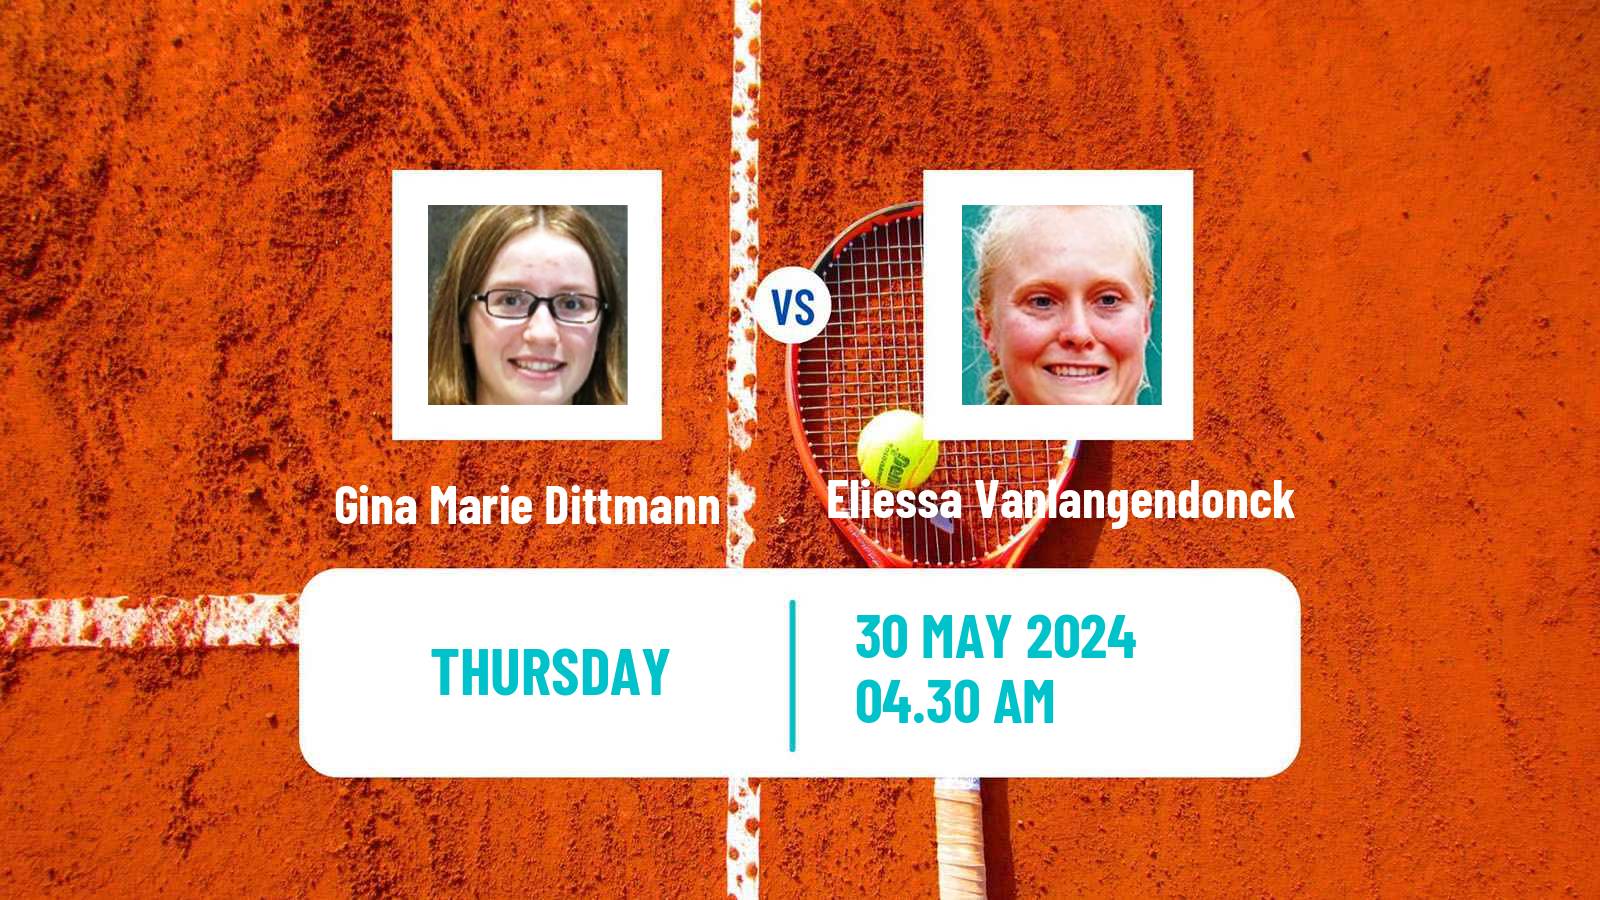 Tennis ITF W15 Monastir 20 Women Gina Marie Dittmann - Eliessa Vanlangendonck